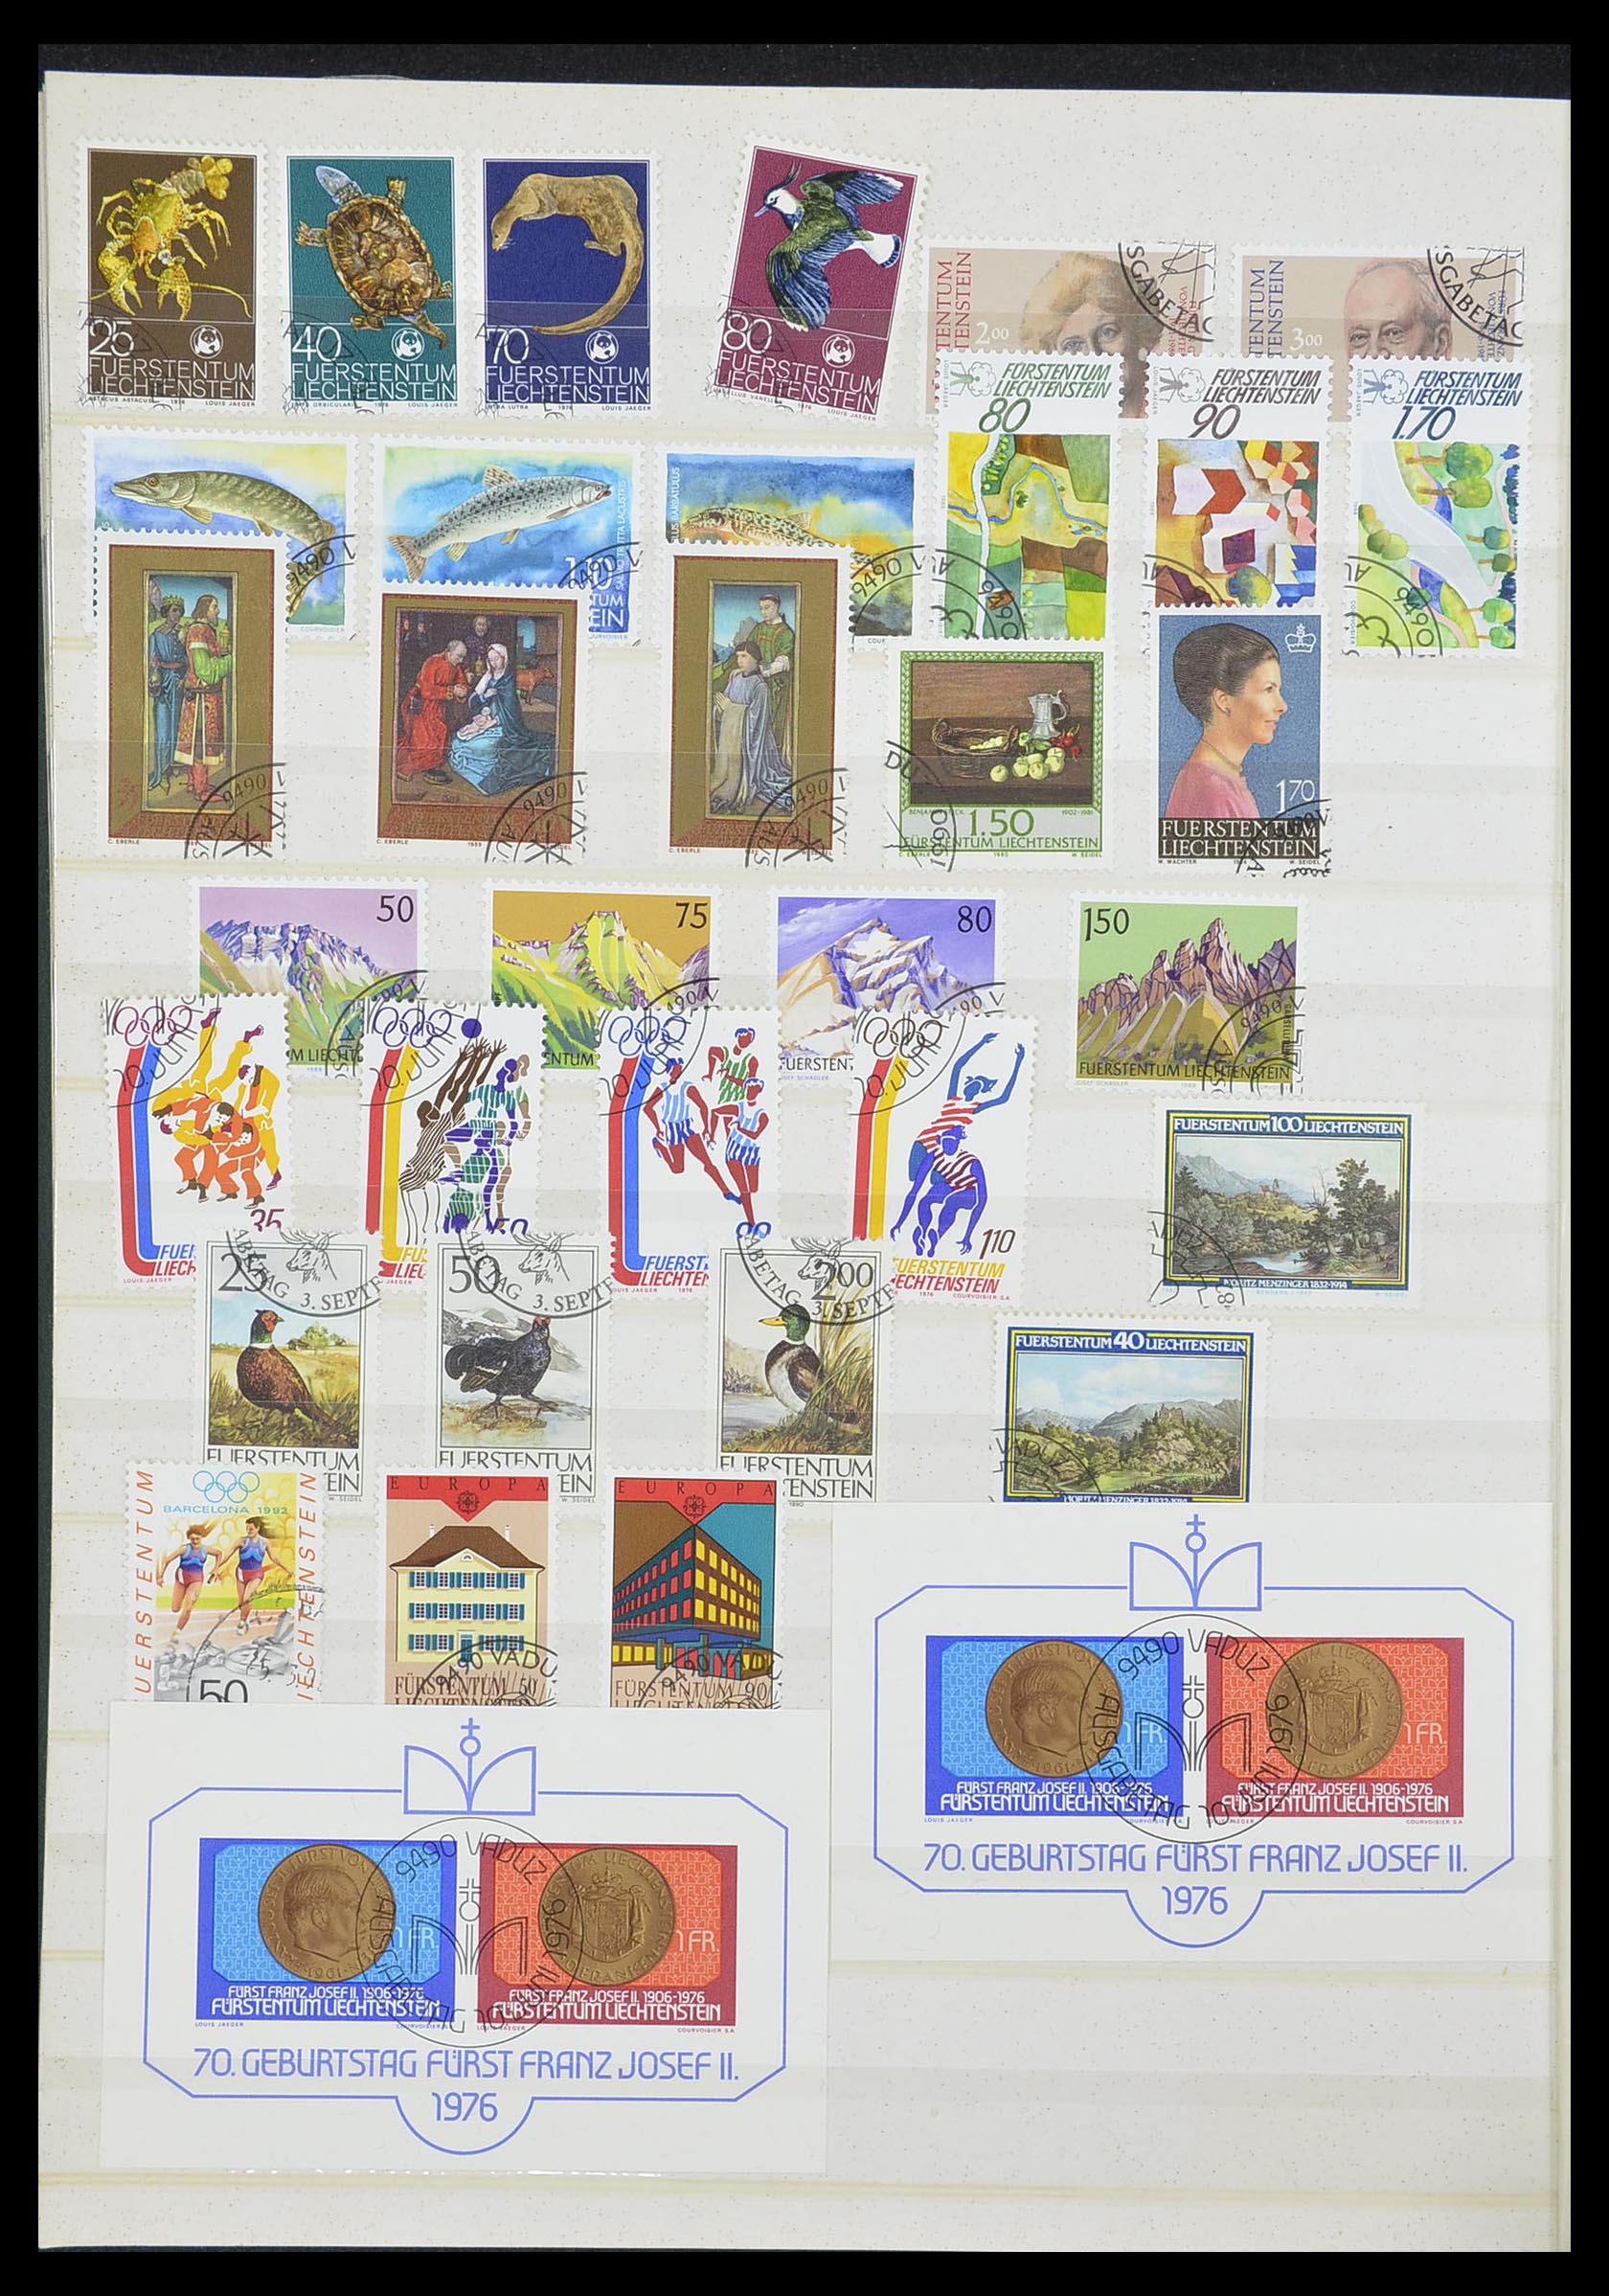 33884 033 - Stamp collection 33884 Liechtenstein 1920-2002.